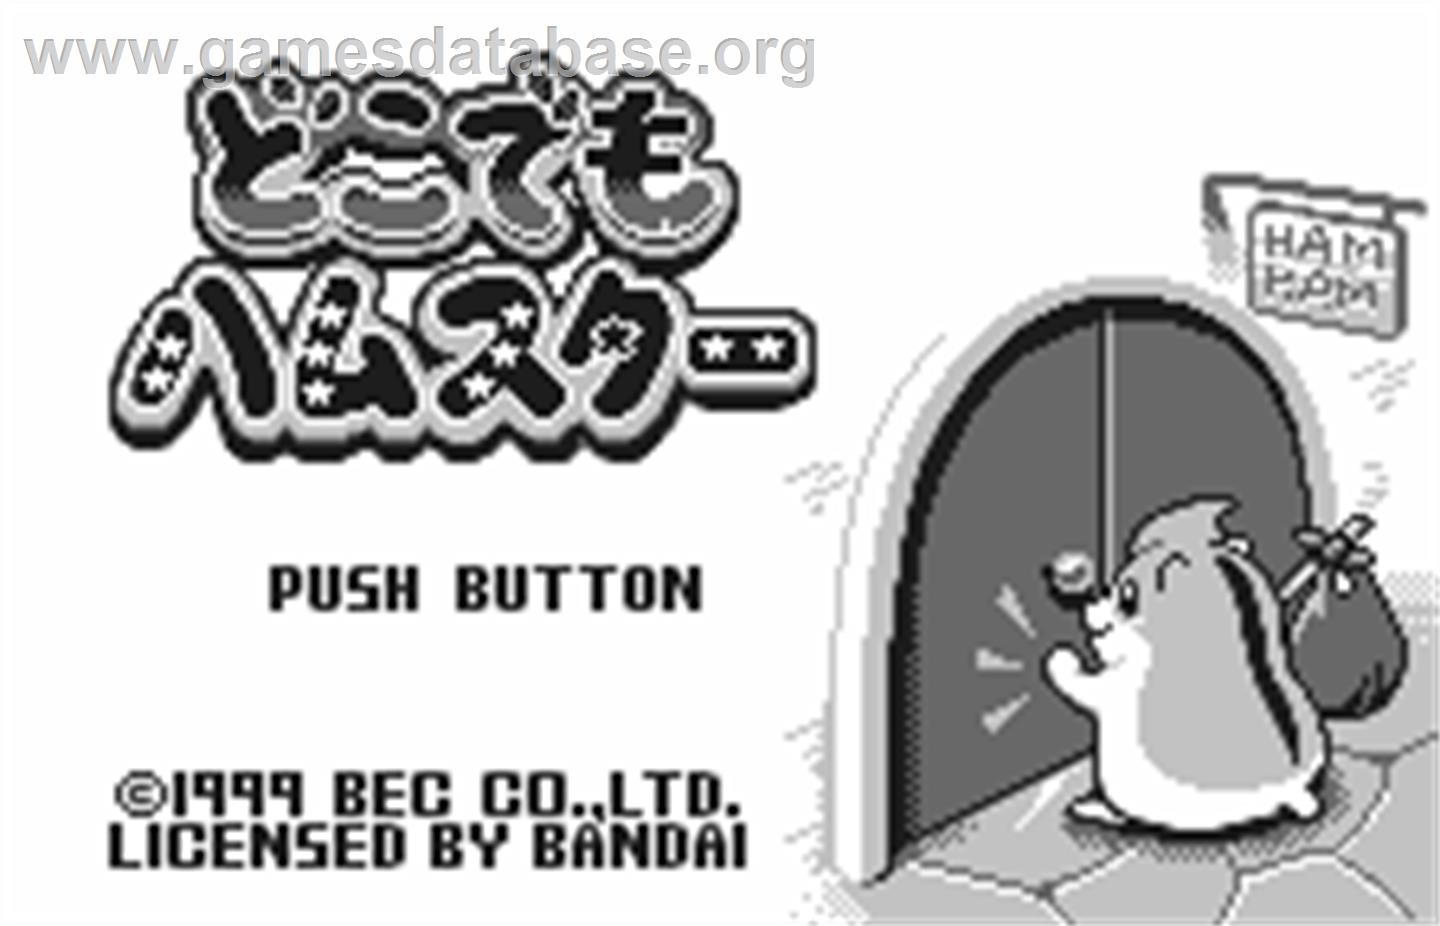 Dokodemo Hamster - Bandai WonderSwan - Artwork - Title Screen